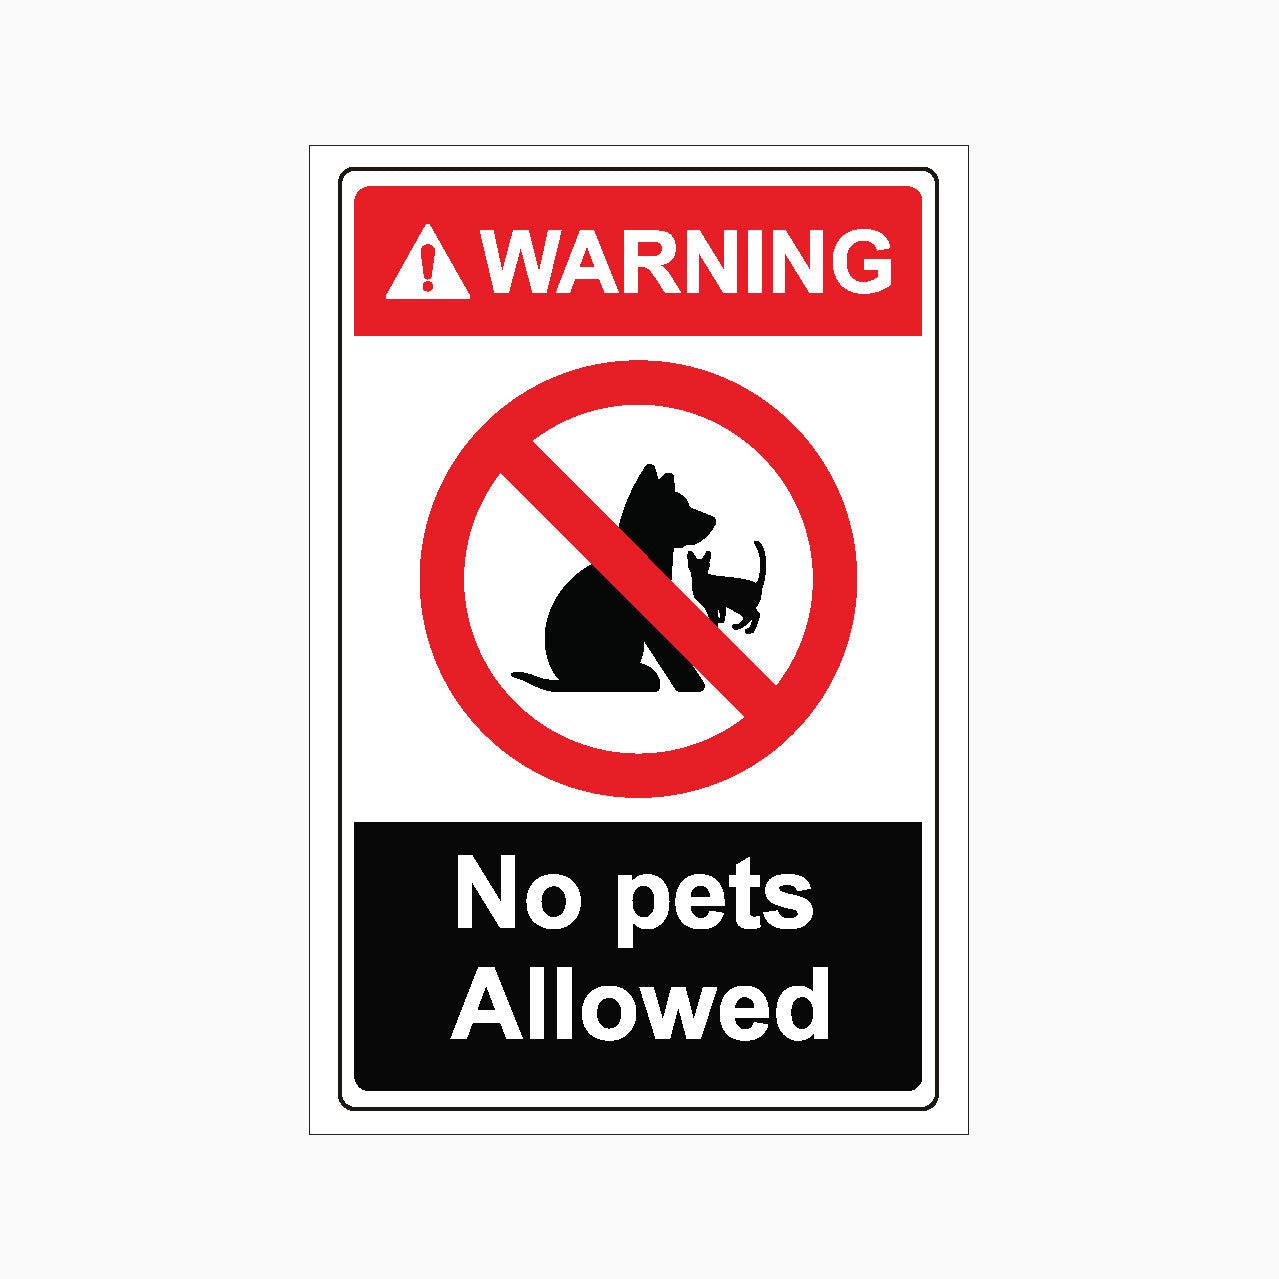 WARNING SIGN - NO PETS ALLOWED SIGN